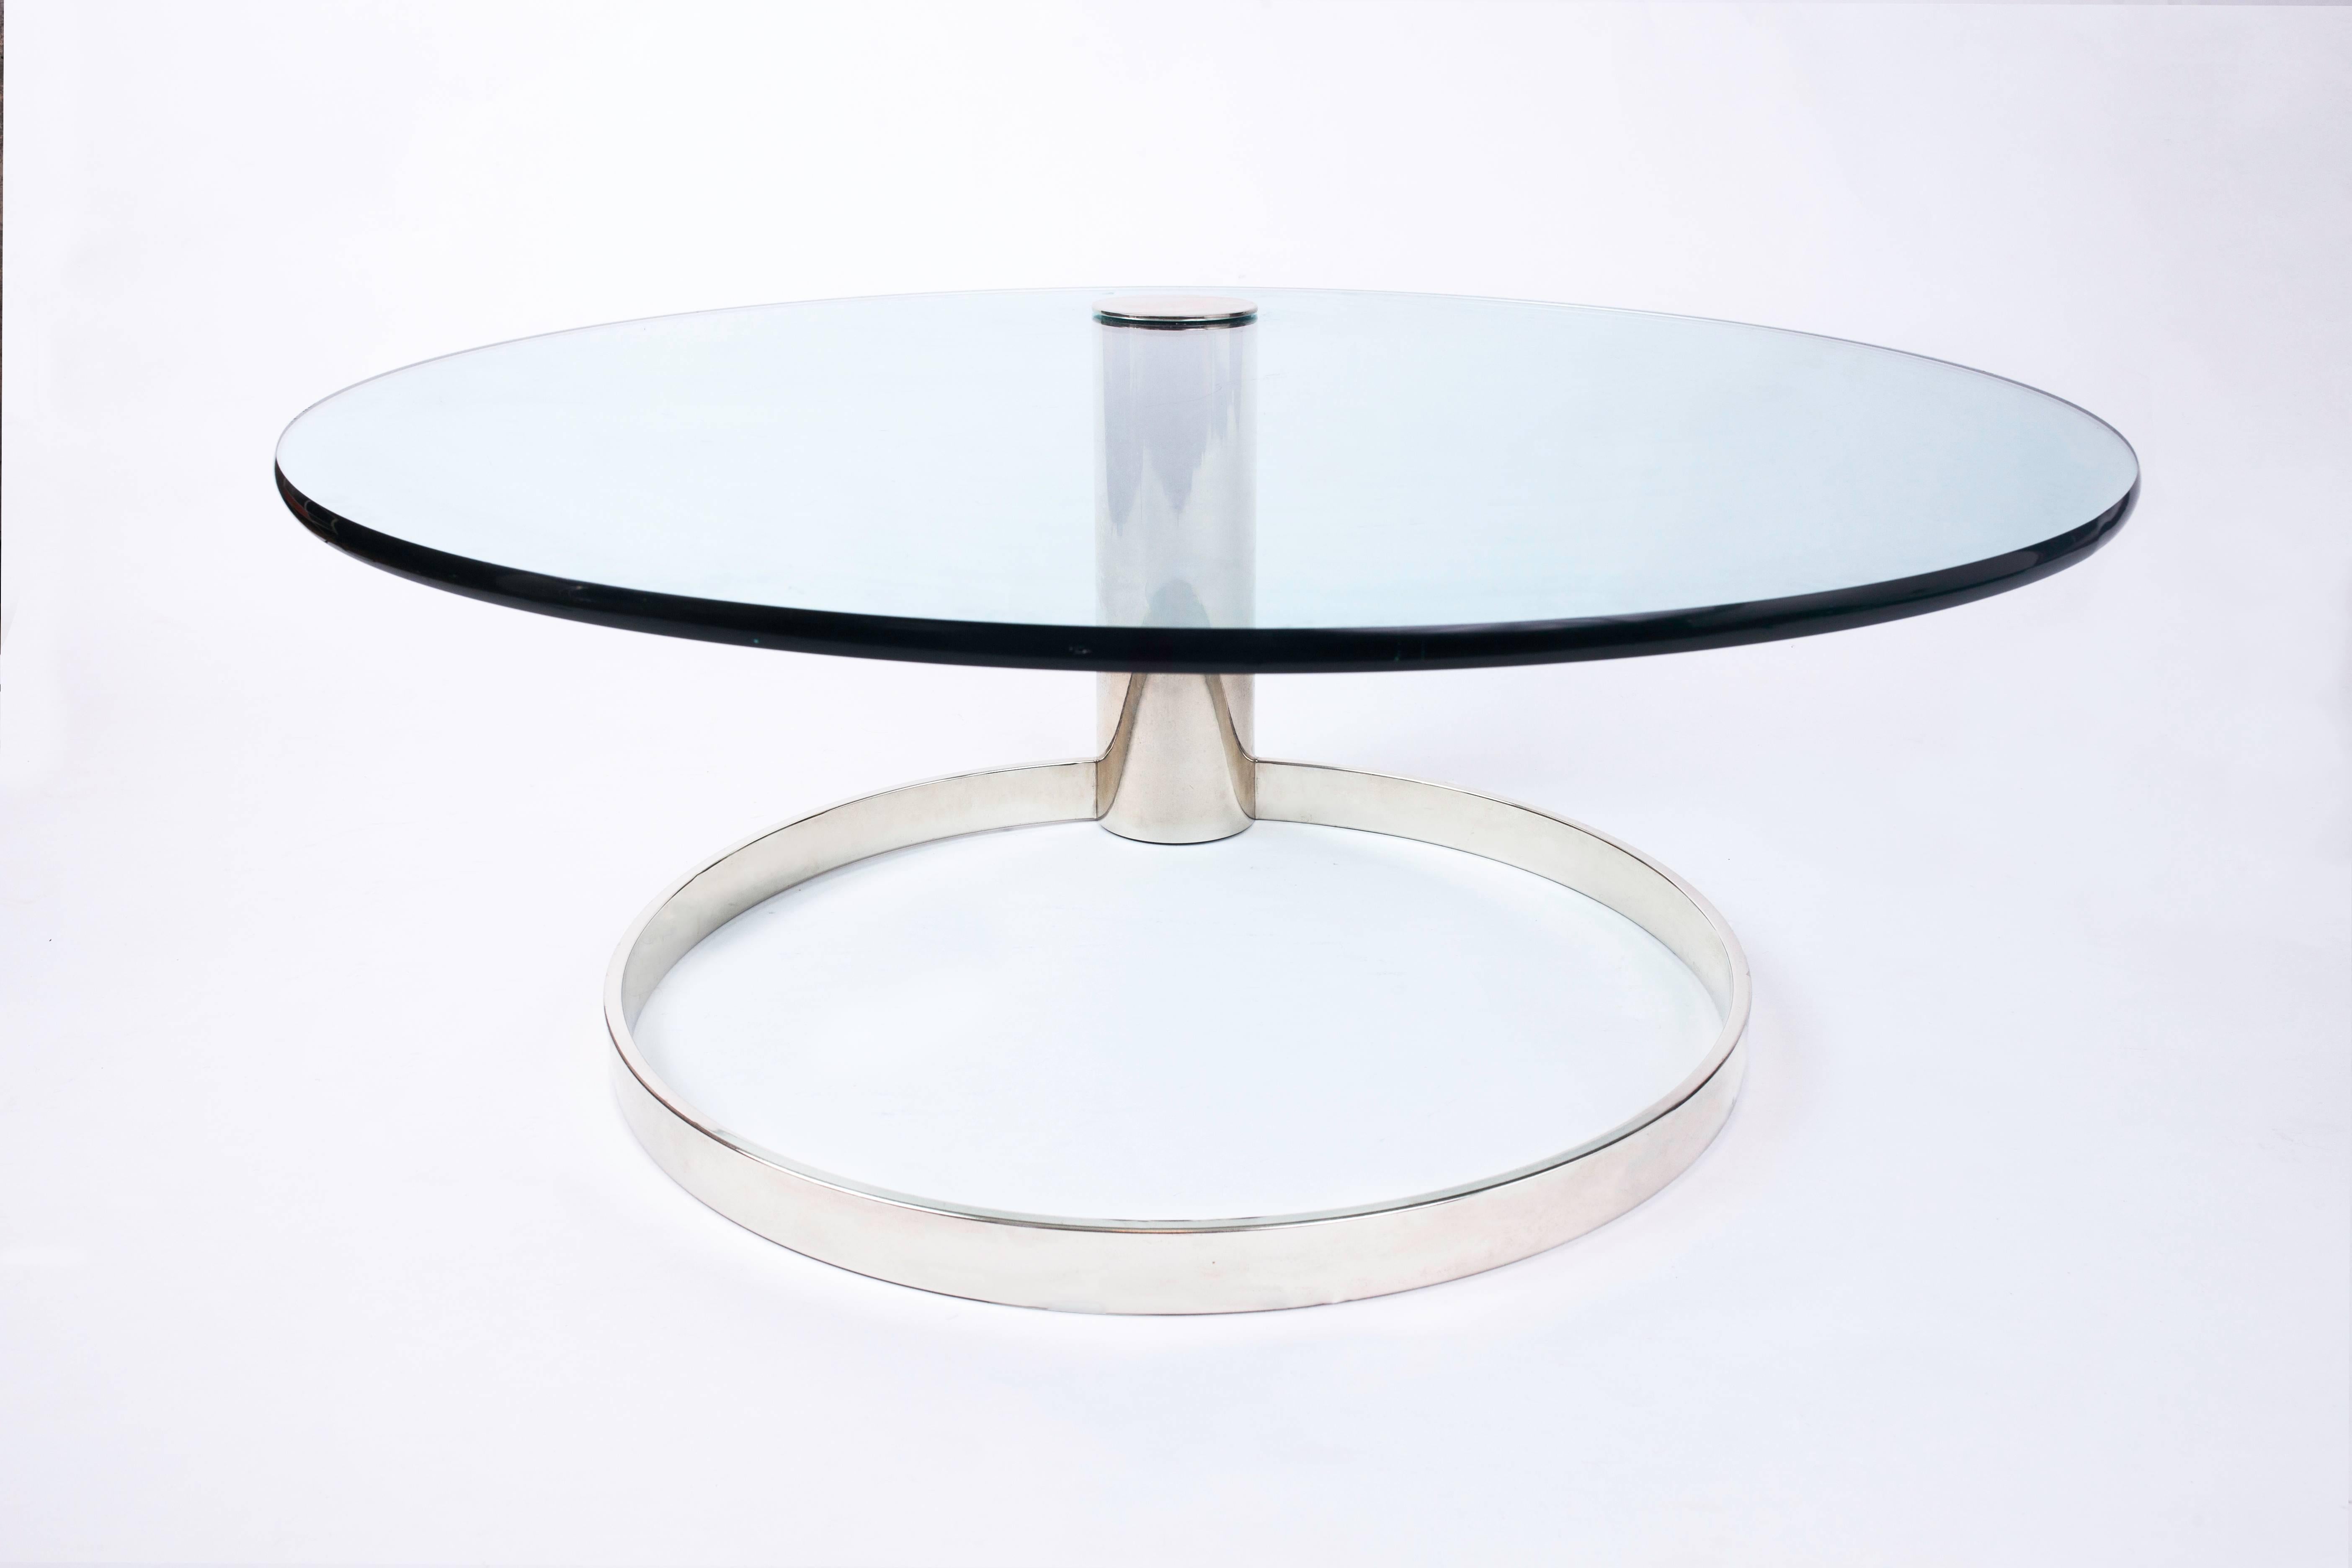 Table basse circulaire flottante en verre et en chrome de Leon Rosen pour Pace, avec un plateau en porte-à-faux dynamique dépassant d'une base architecturale en forme d'anneau. Un design minimaliste savamment équilibré.
 